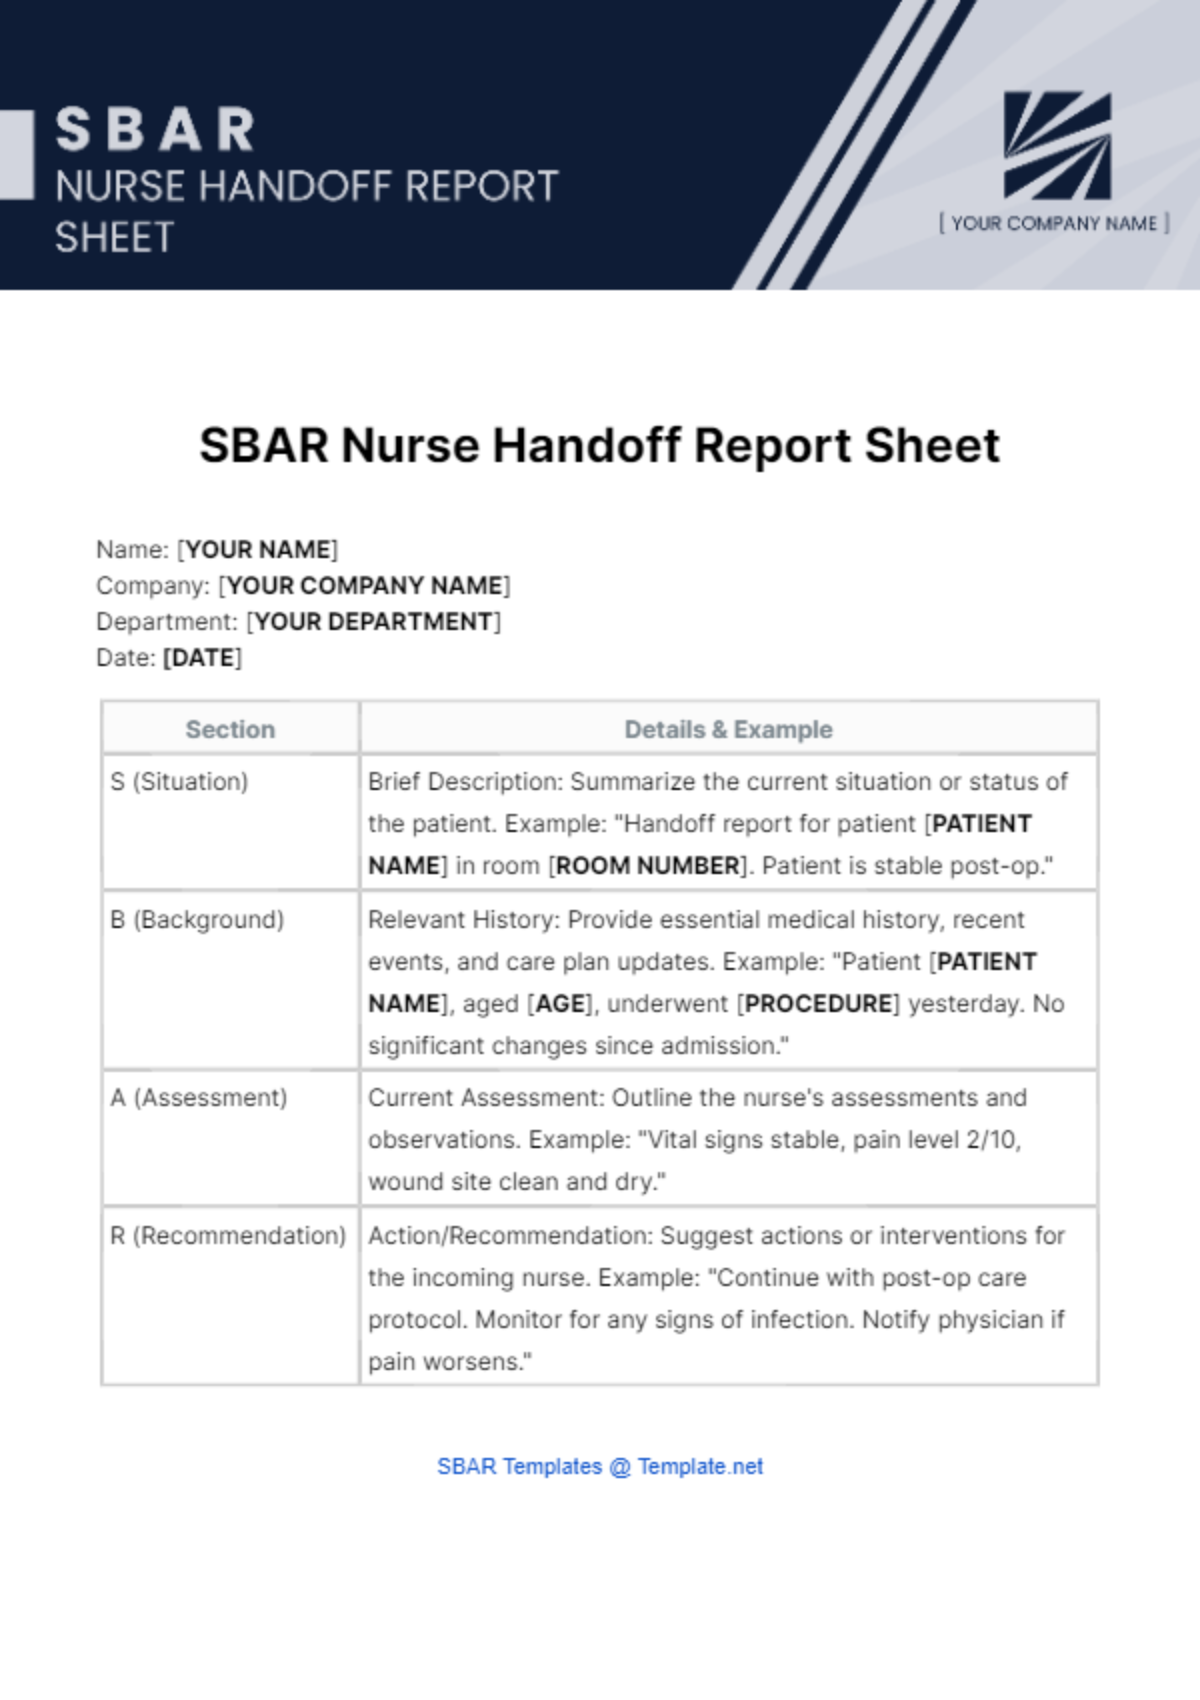 SBAR Nurse Handoff Report Sheet Template